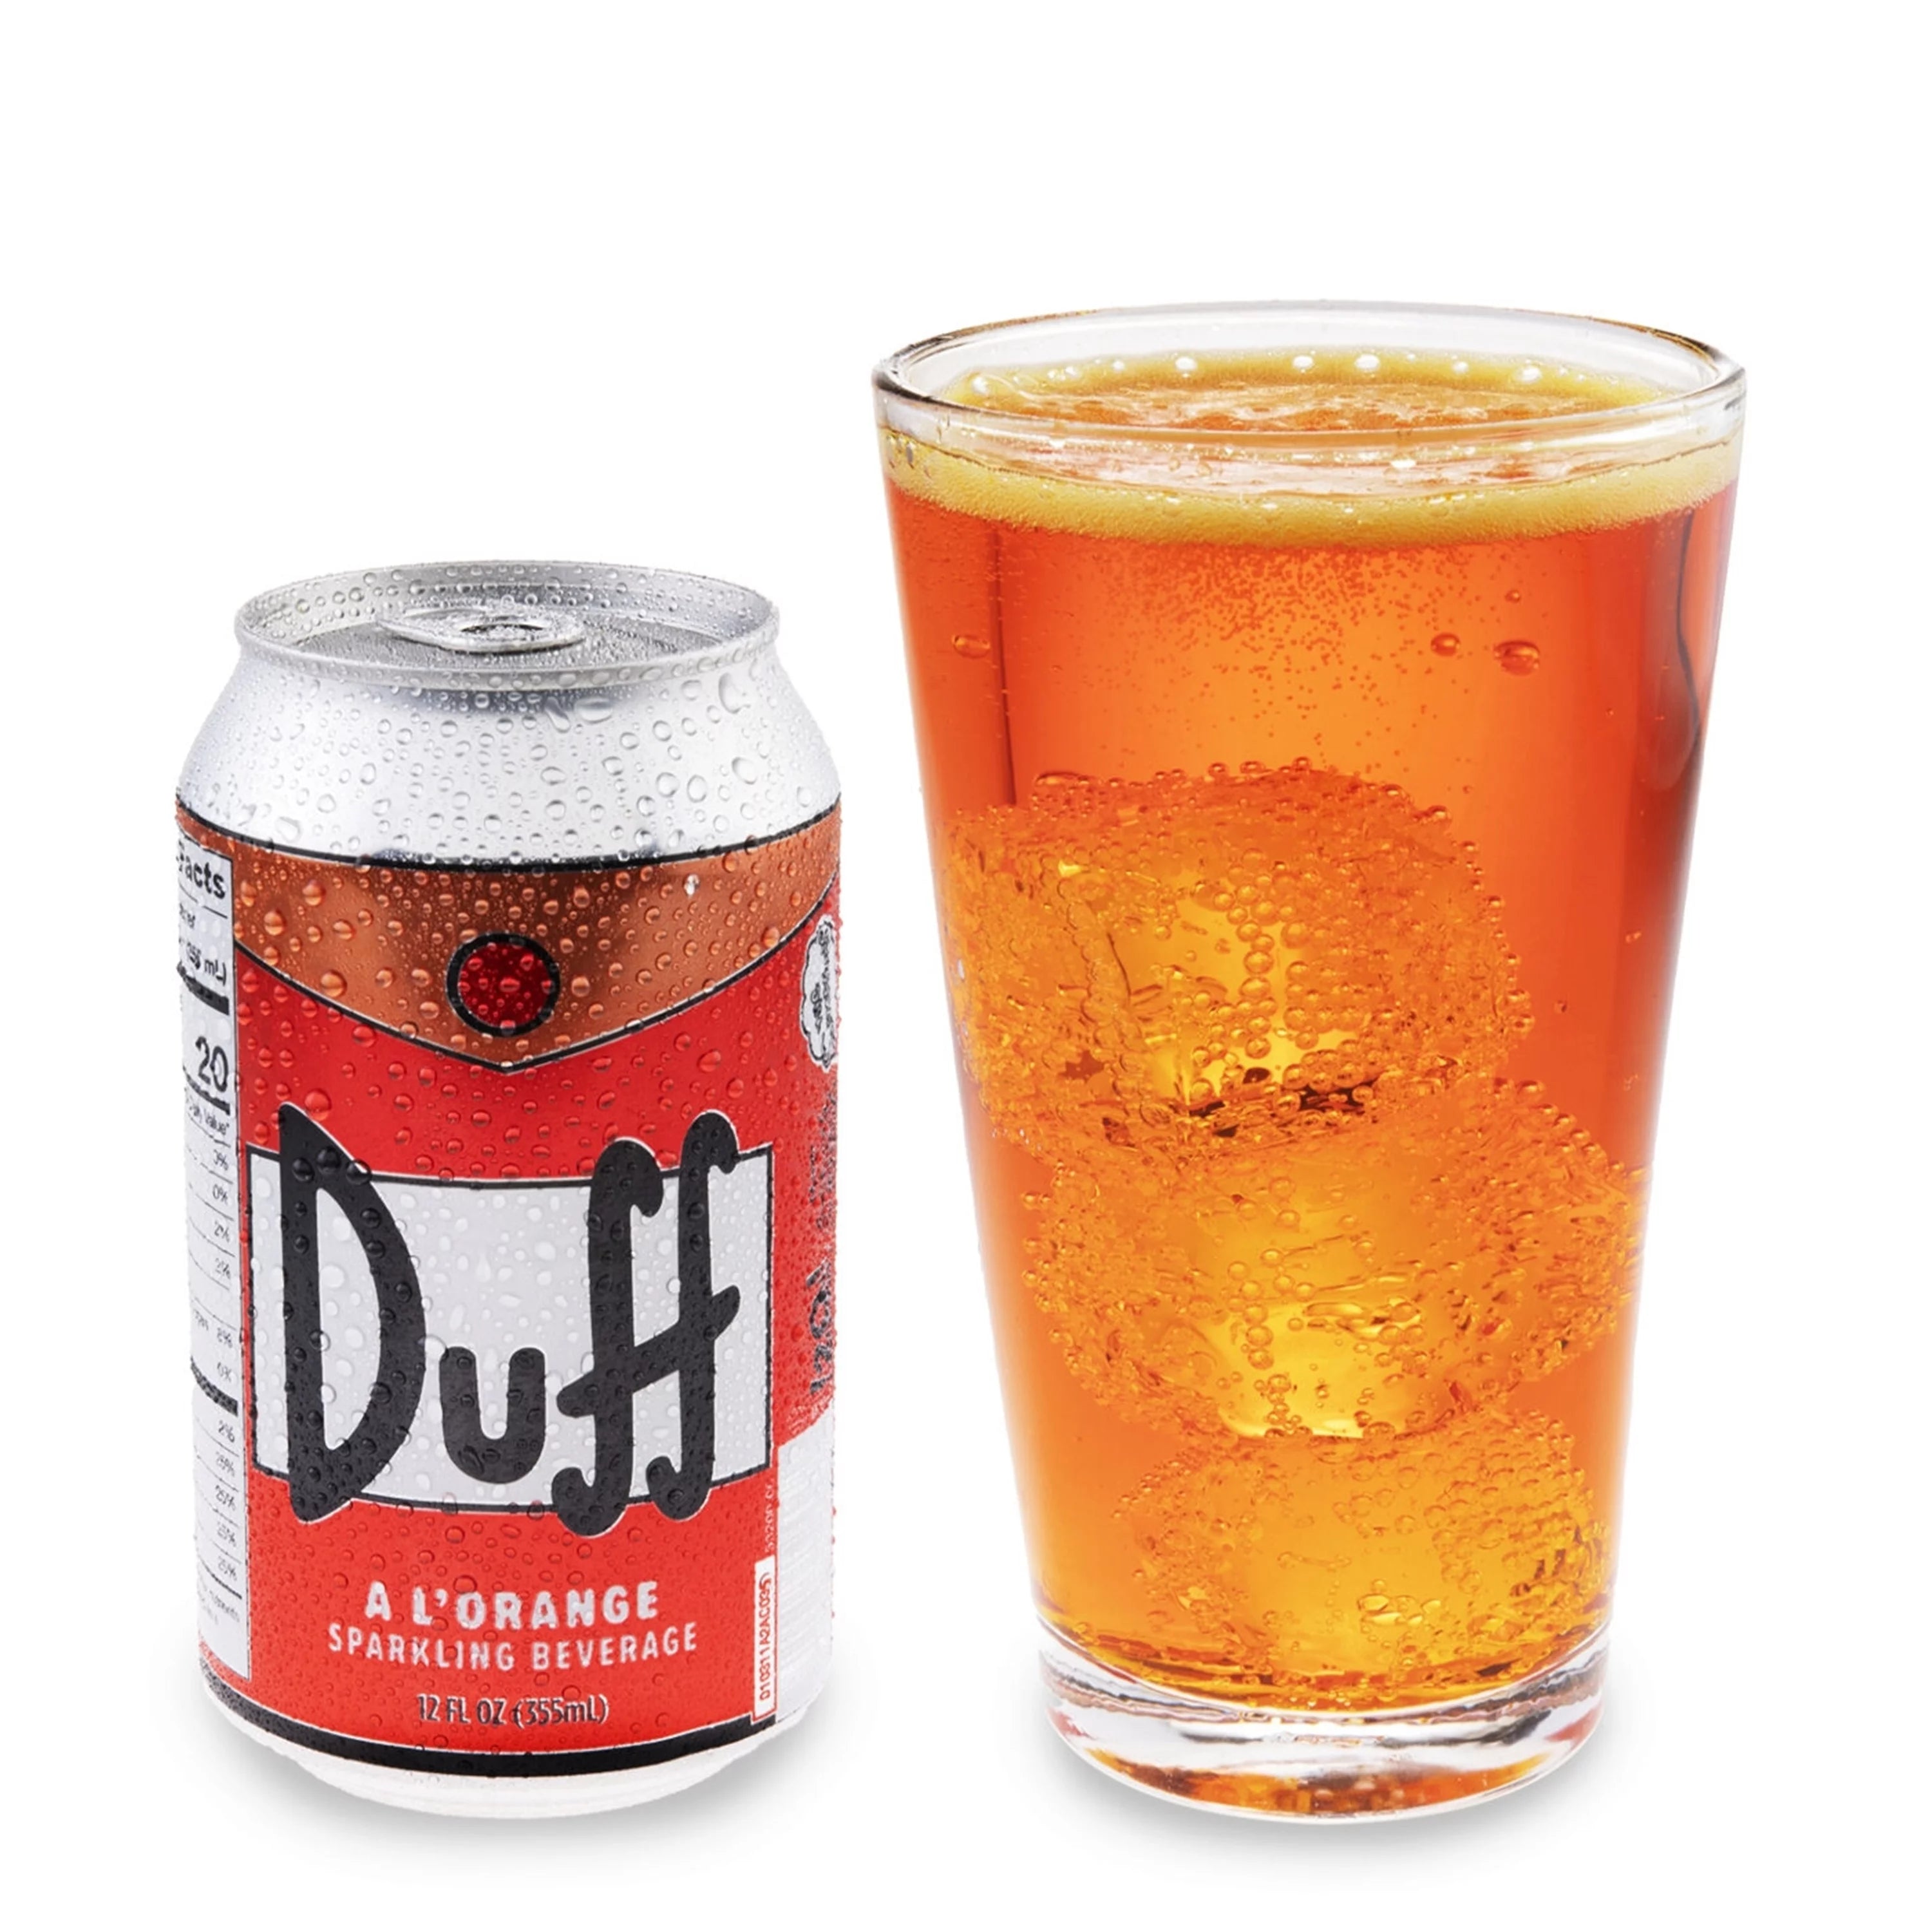 Boston America - Duff Sparkling Beverage - A L'Orange  - 355ml